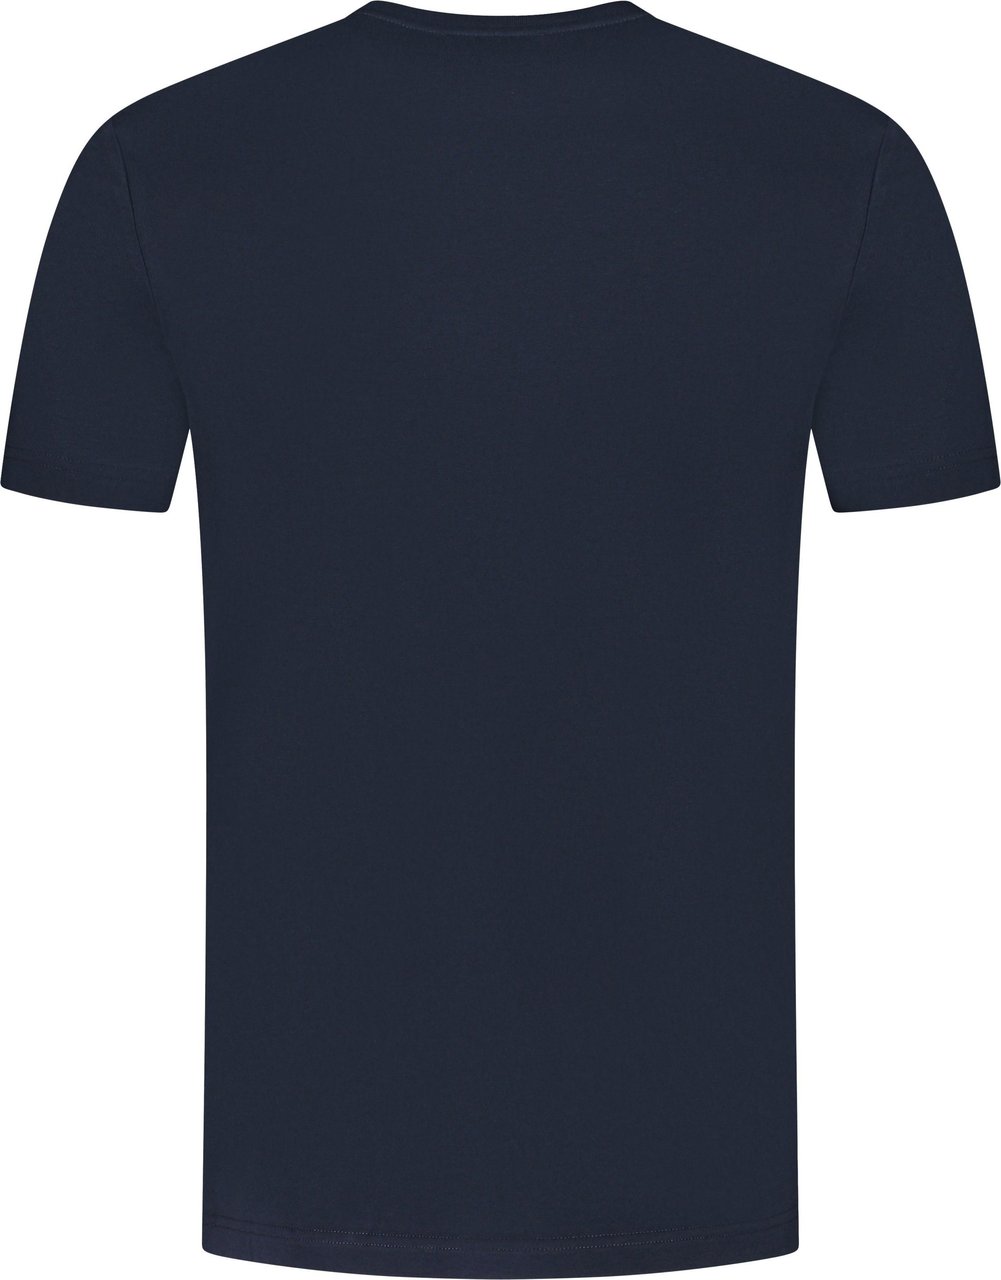 Iceberg T-Shirt Blauw